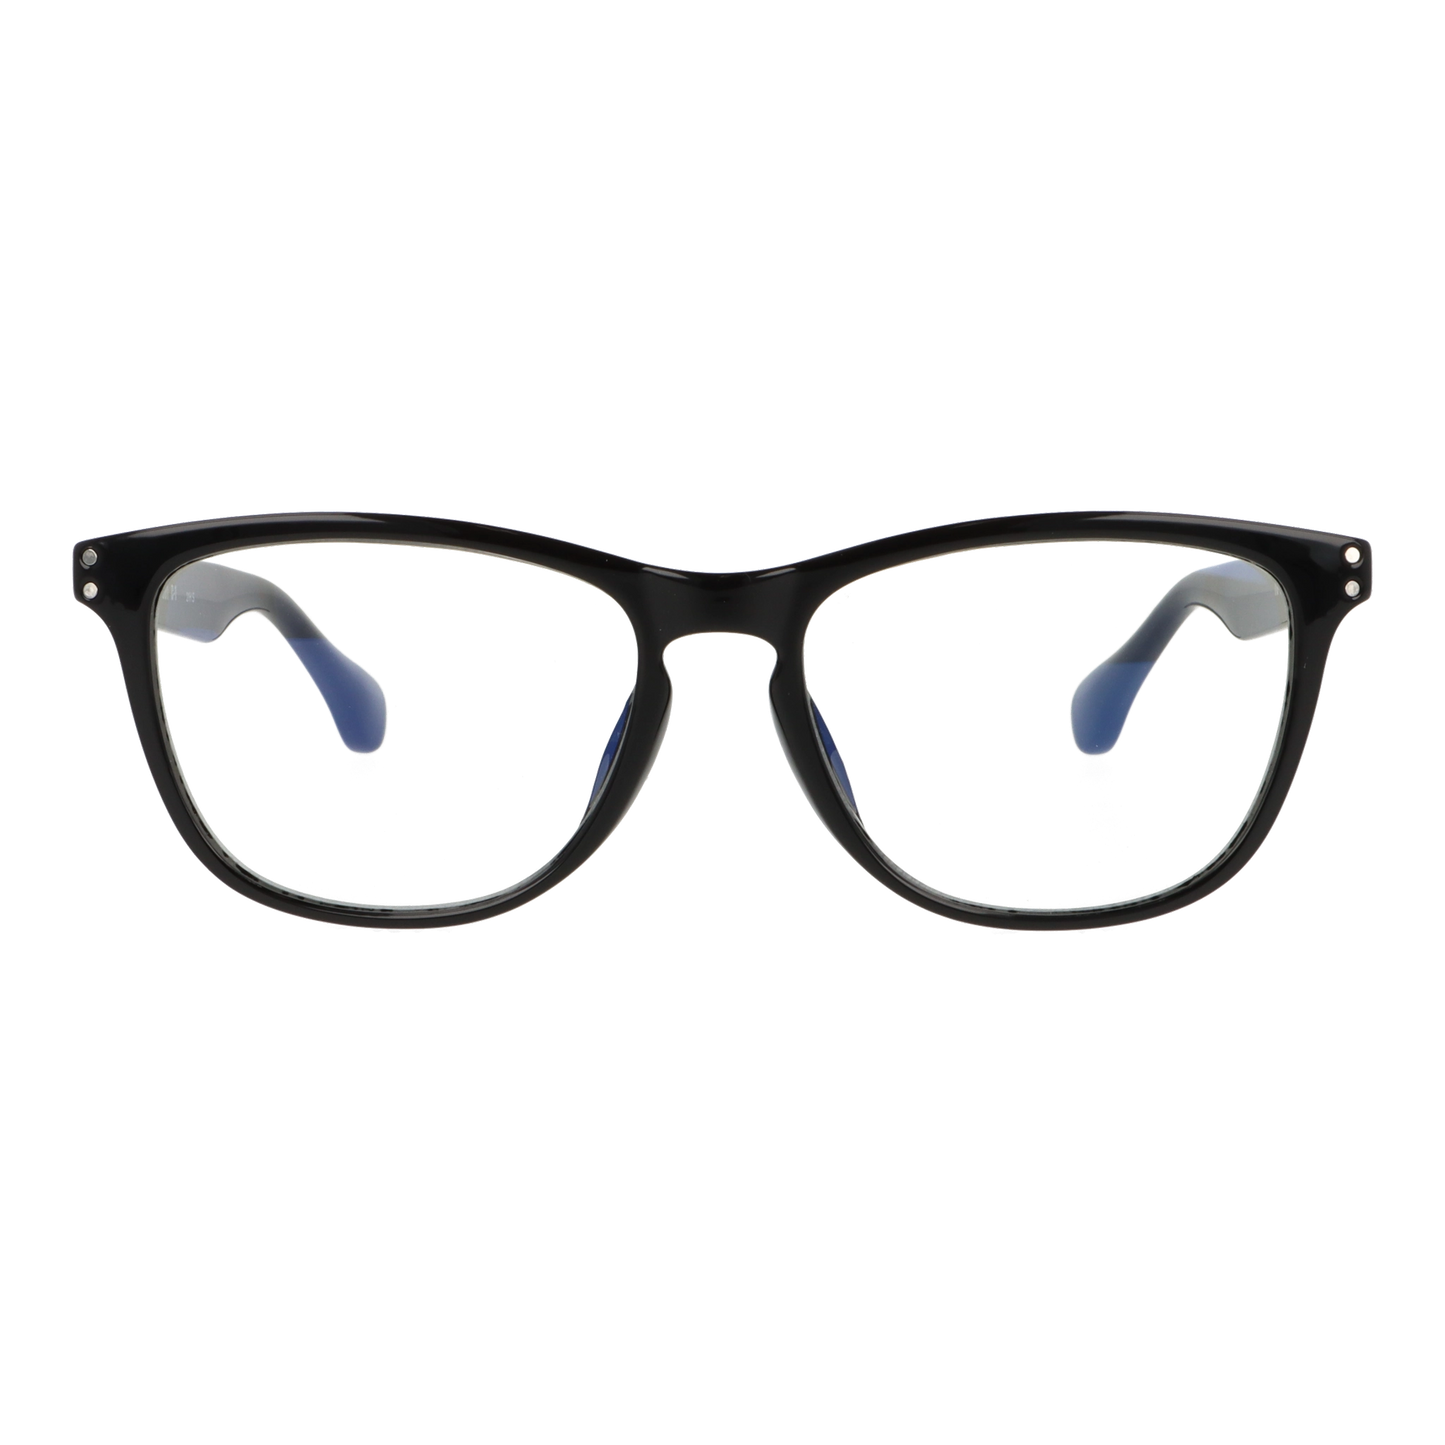 正面から見たアイウェア【ZAAP】【機能性メガネ】ZP001-54のカラーblack luster